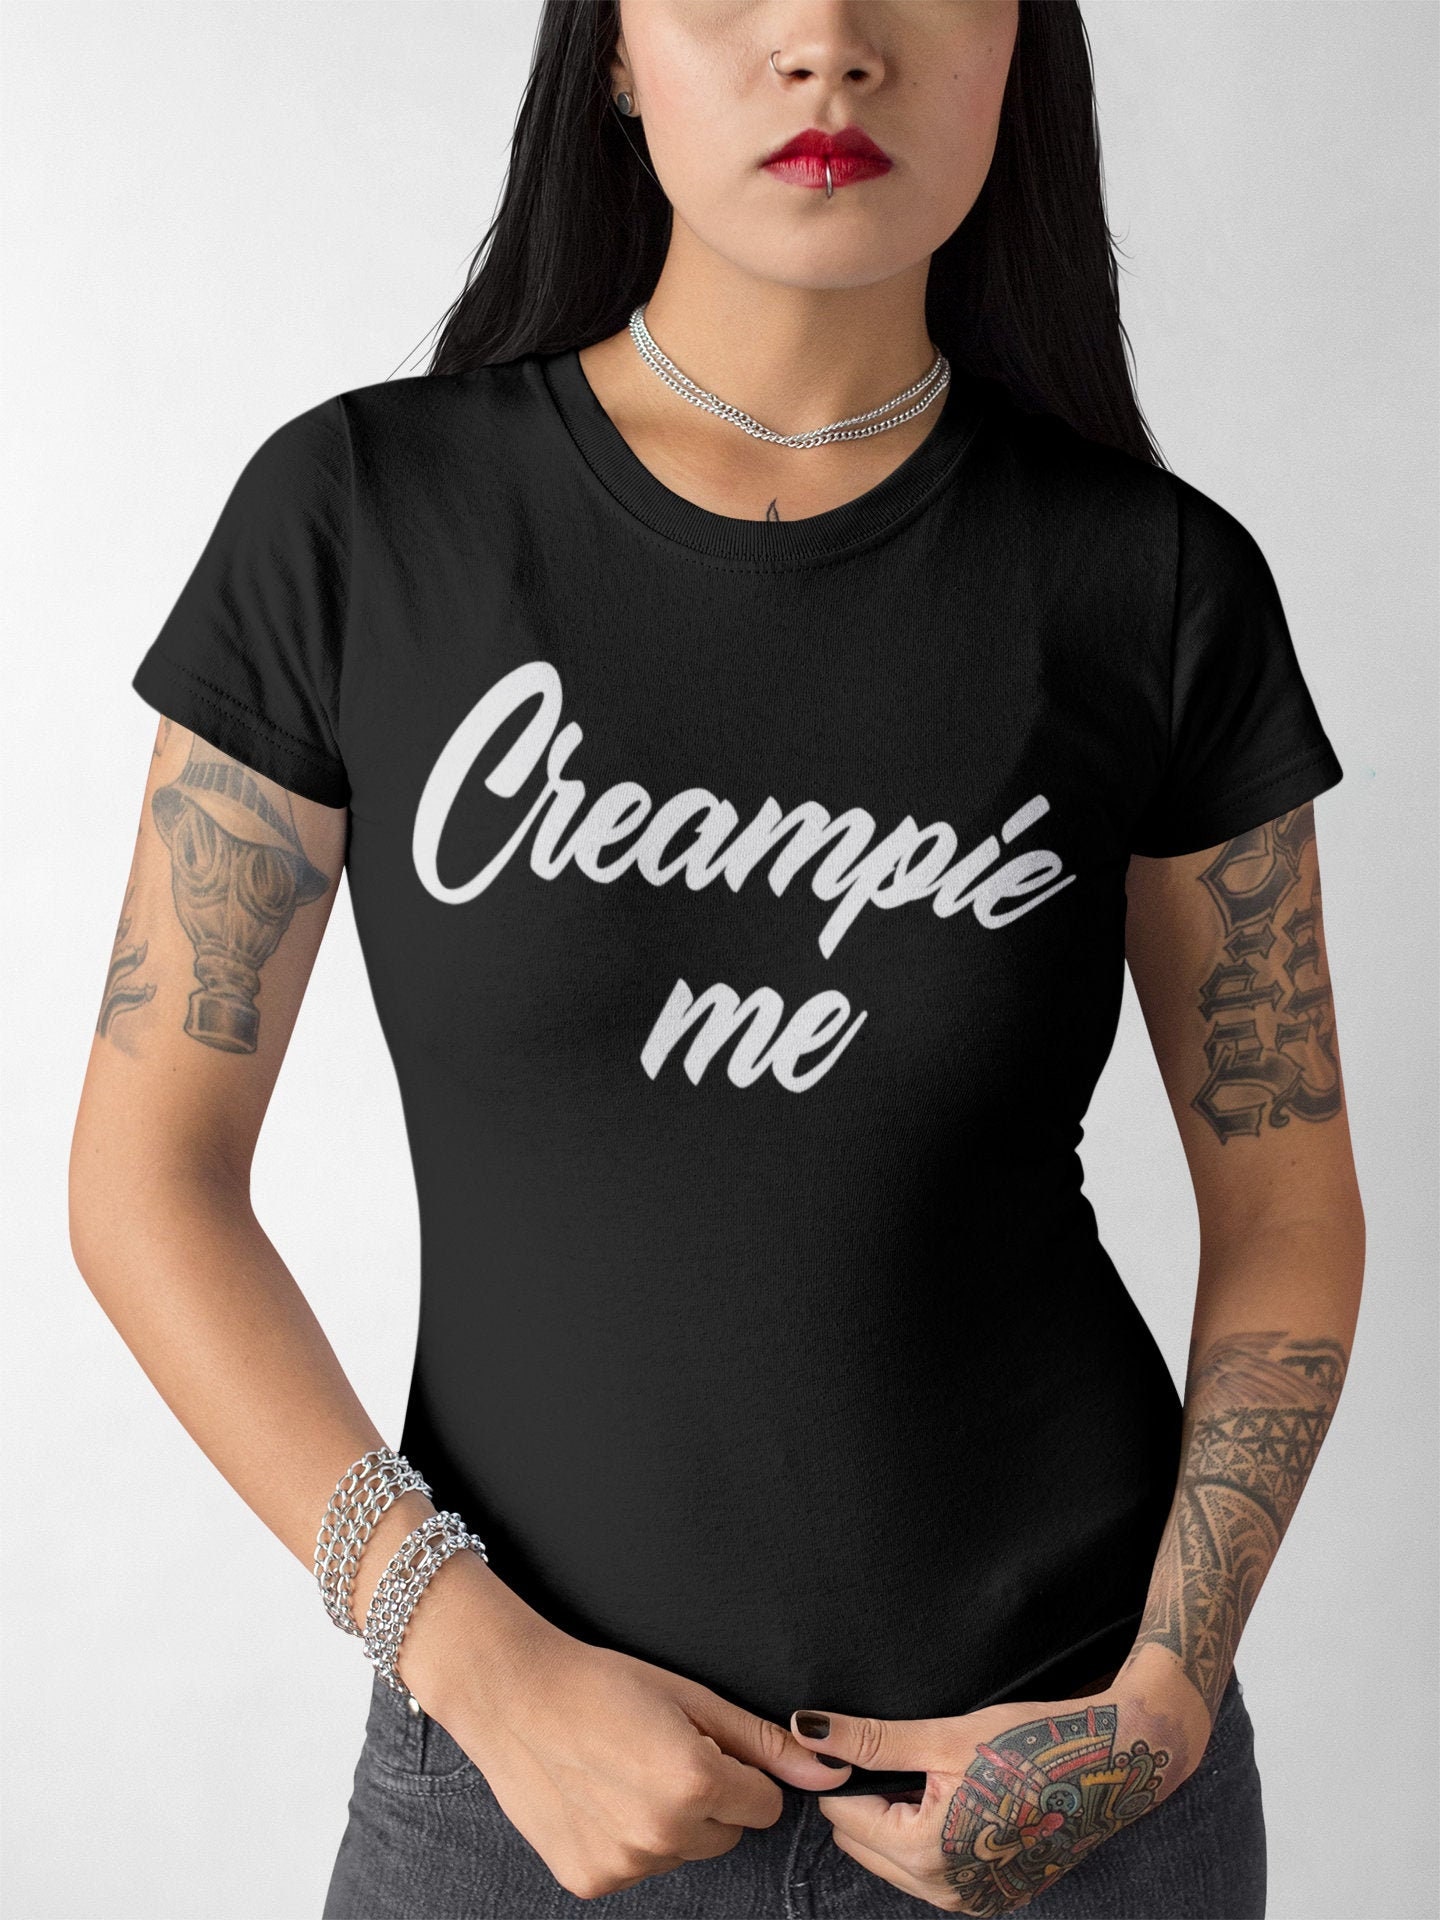 Creampie Me Creampie Fill Me With Cum Cum Cumslut